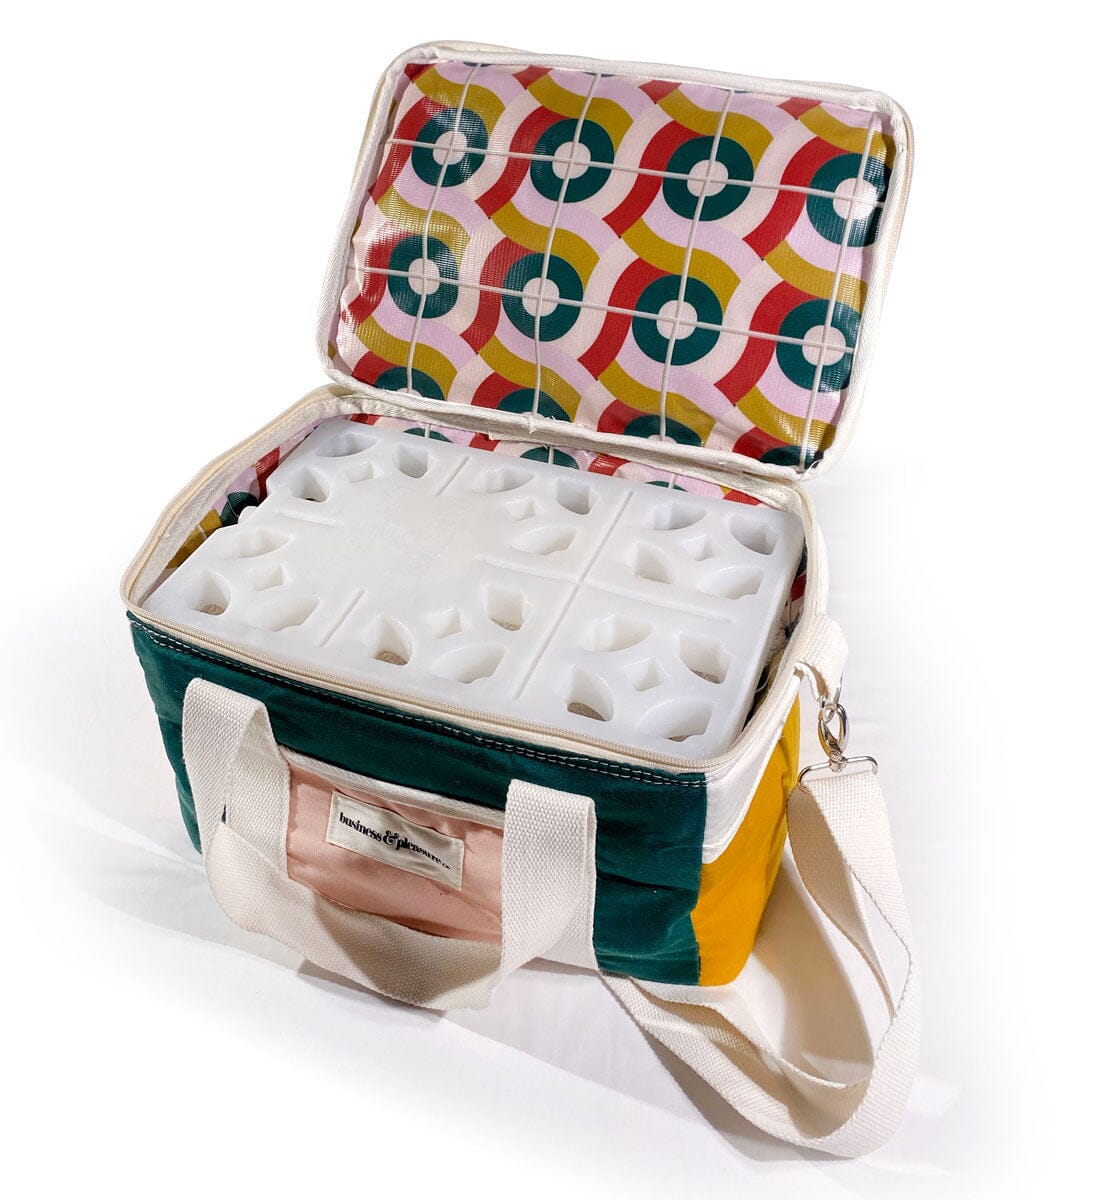 Studio image of ice pack inside a cooler bag